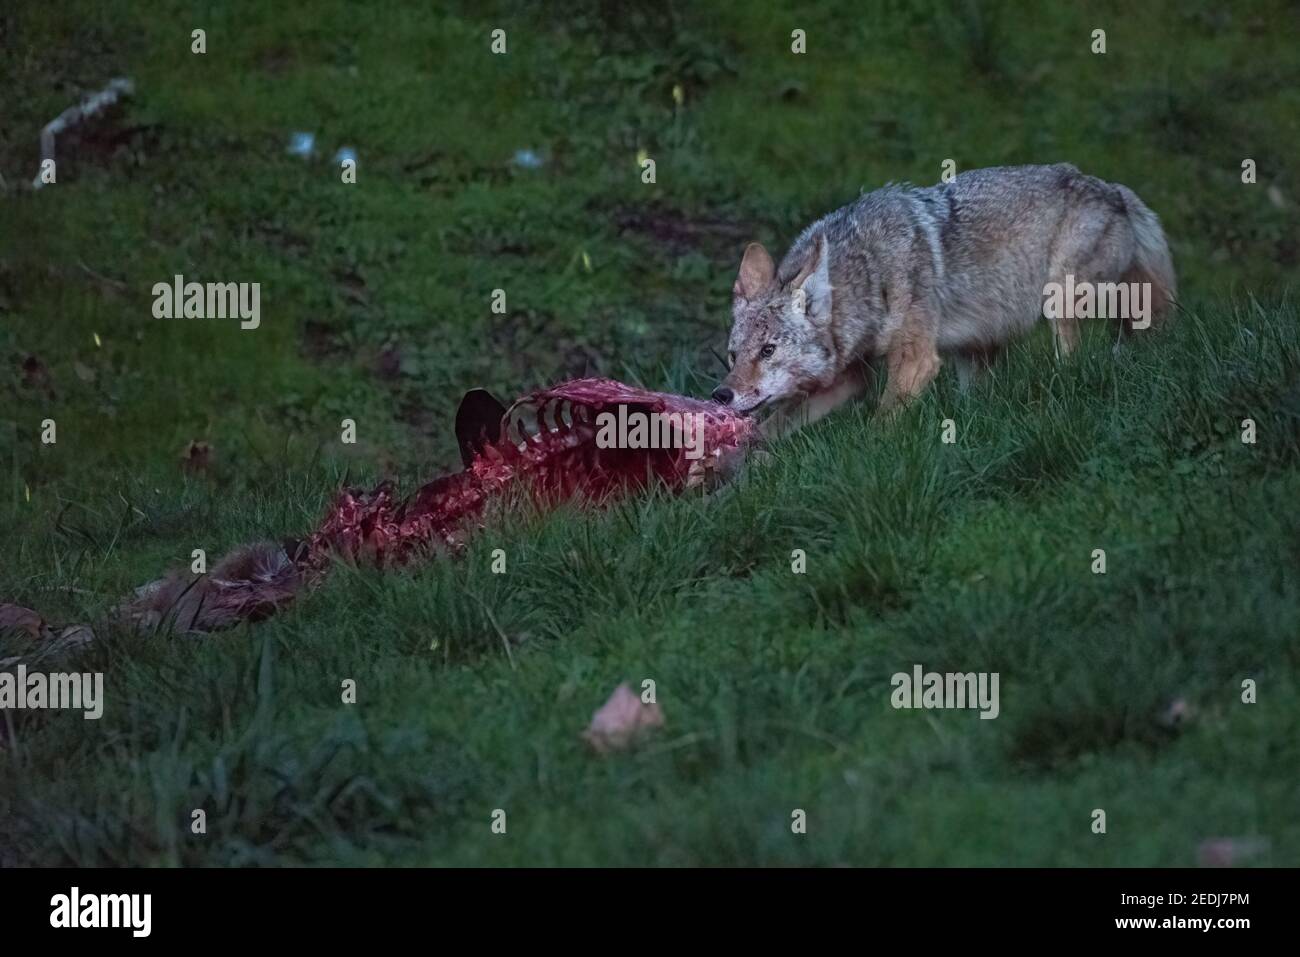 Un coyote (Canis latrans) comiendo un ciervo muerto y sangriento en las cabeceras de Marin del área de recreación Golden Gate en California. Foto de stock